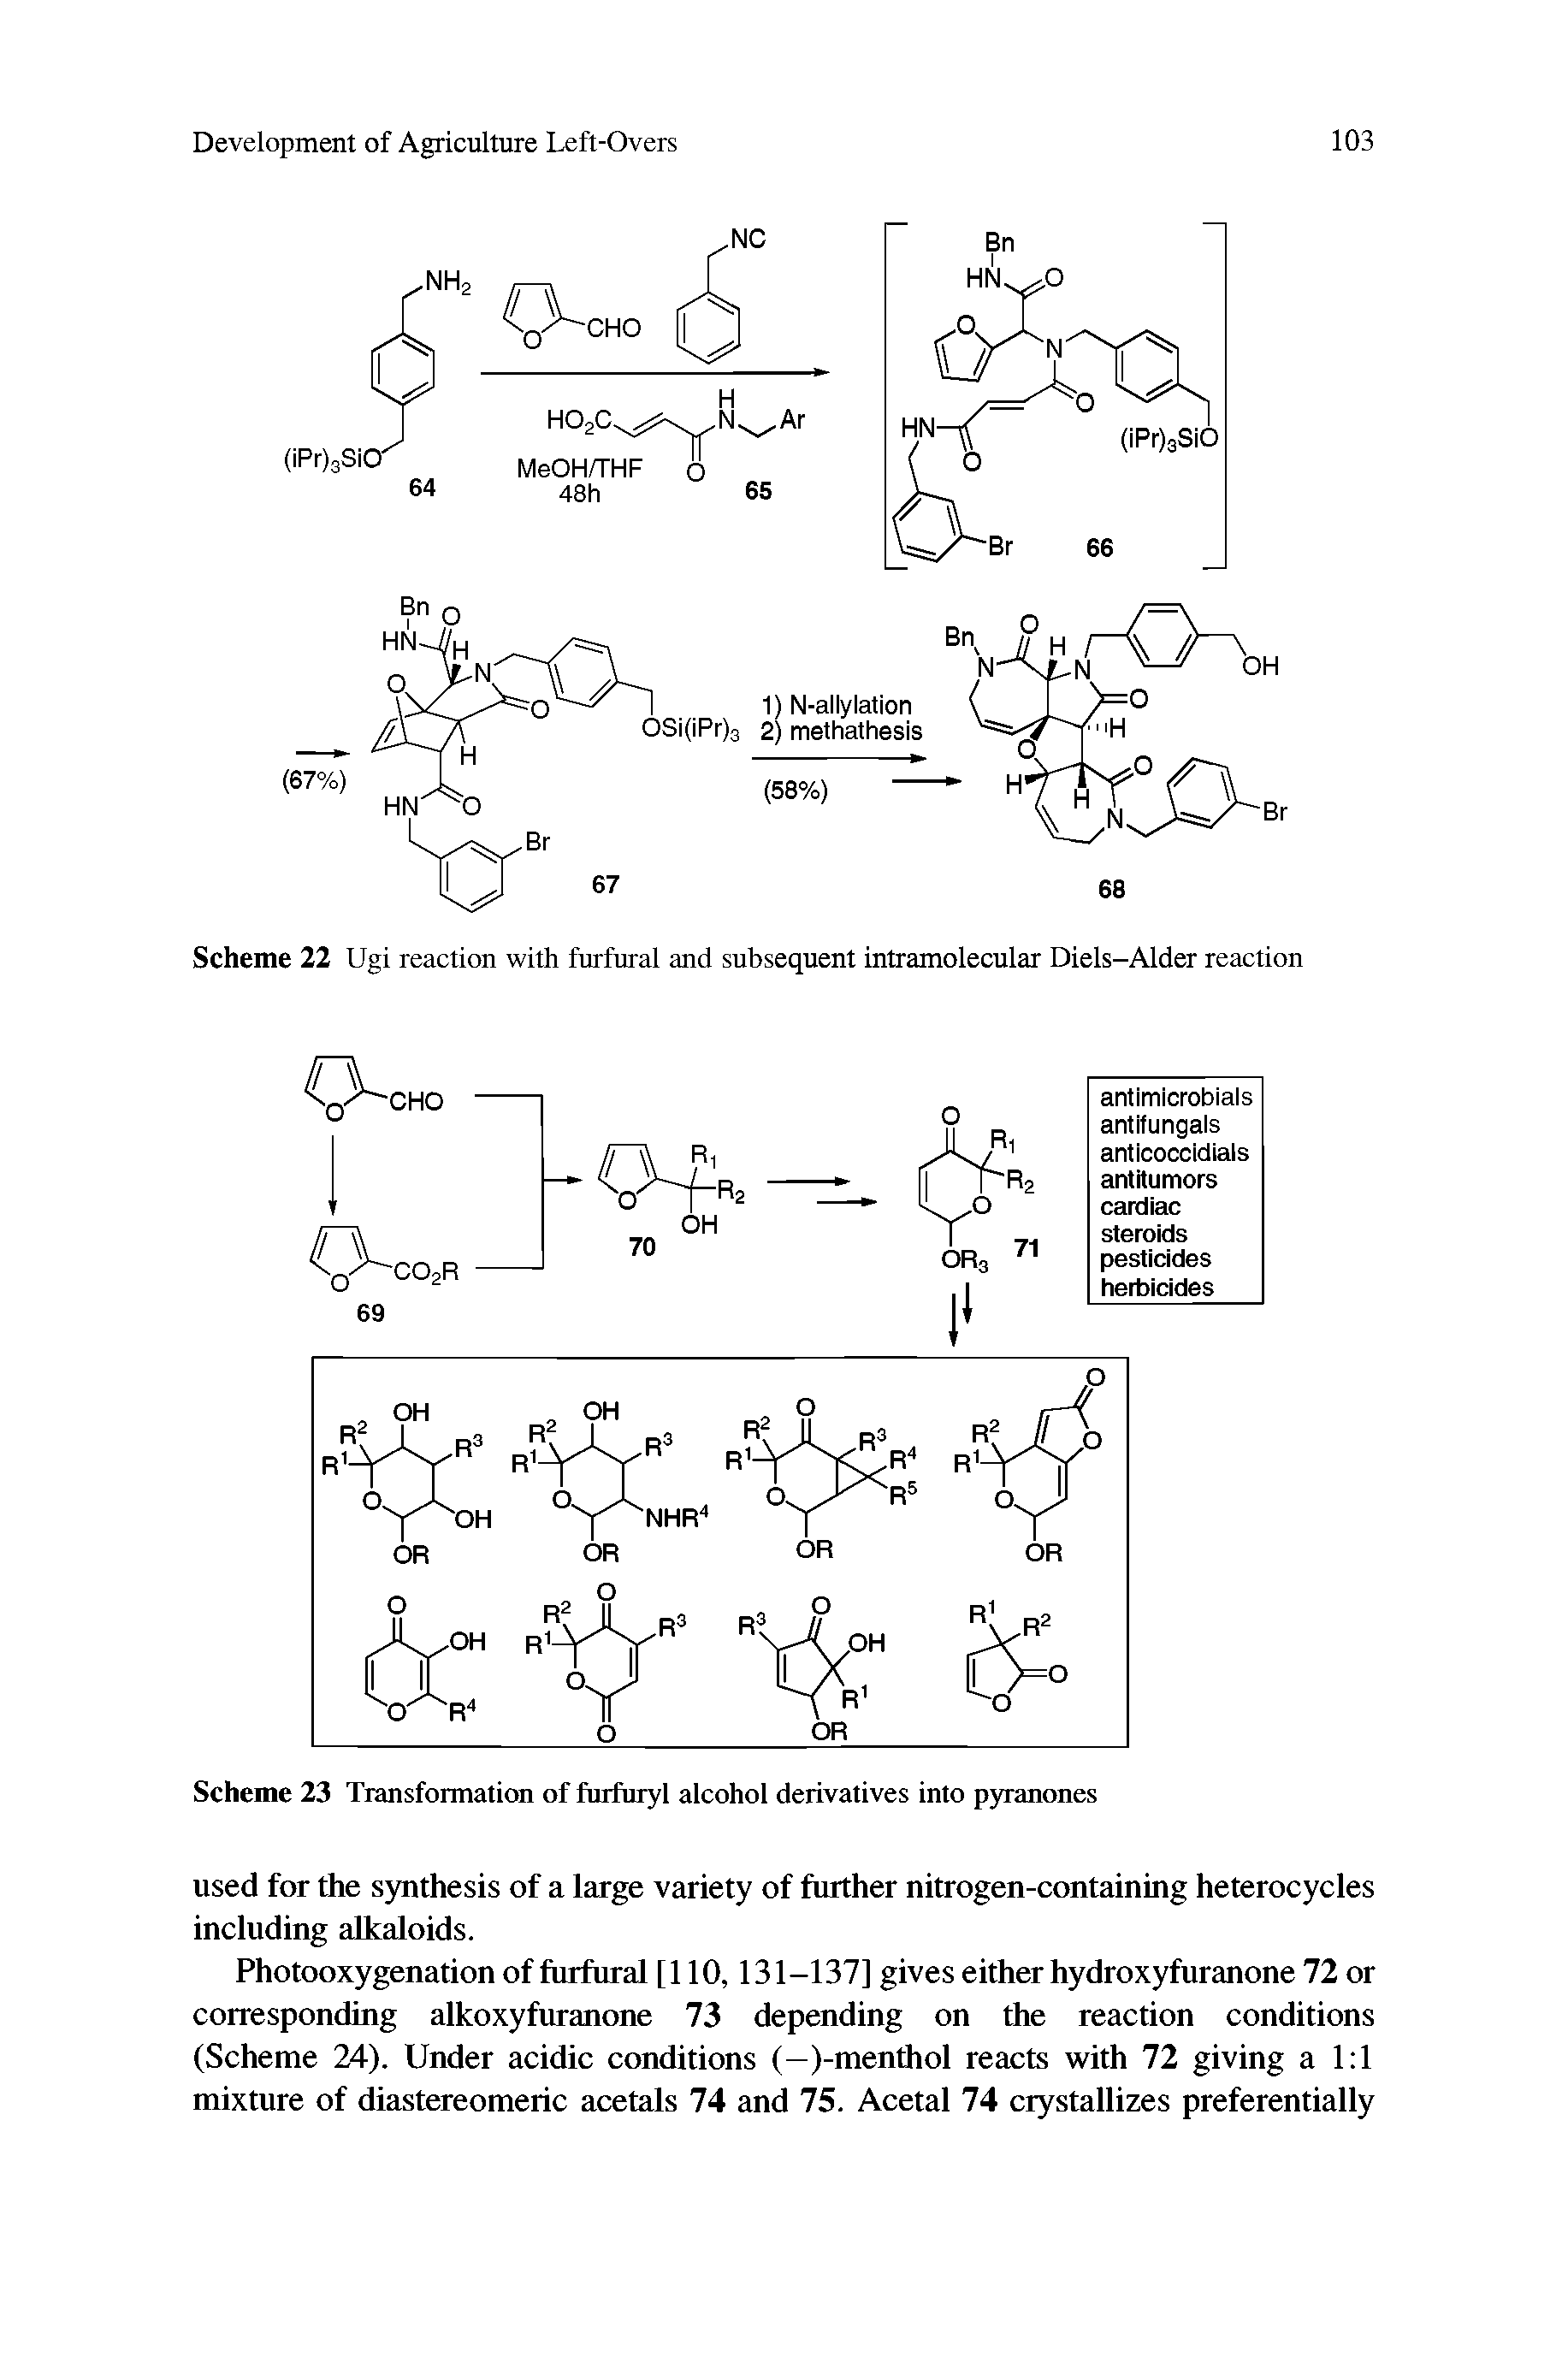 Scheme 23 Transformation of furfuryl alcohol derivatives into pyranones...